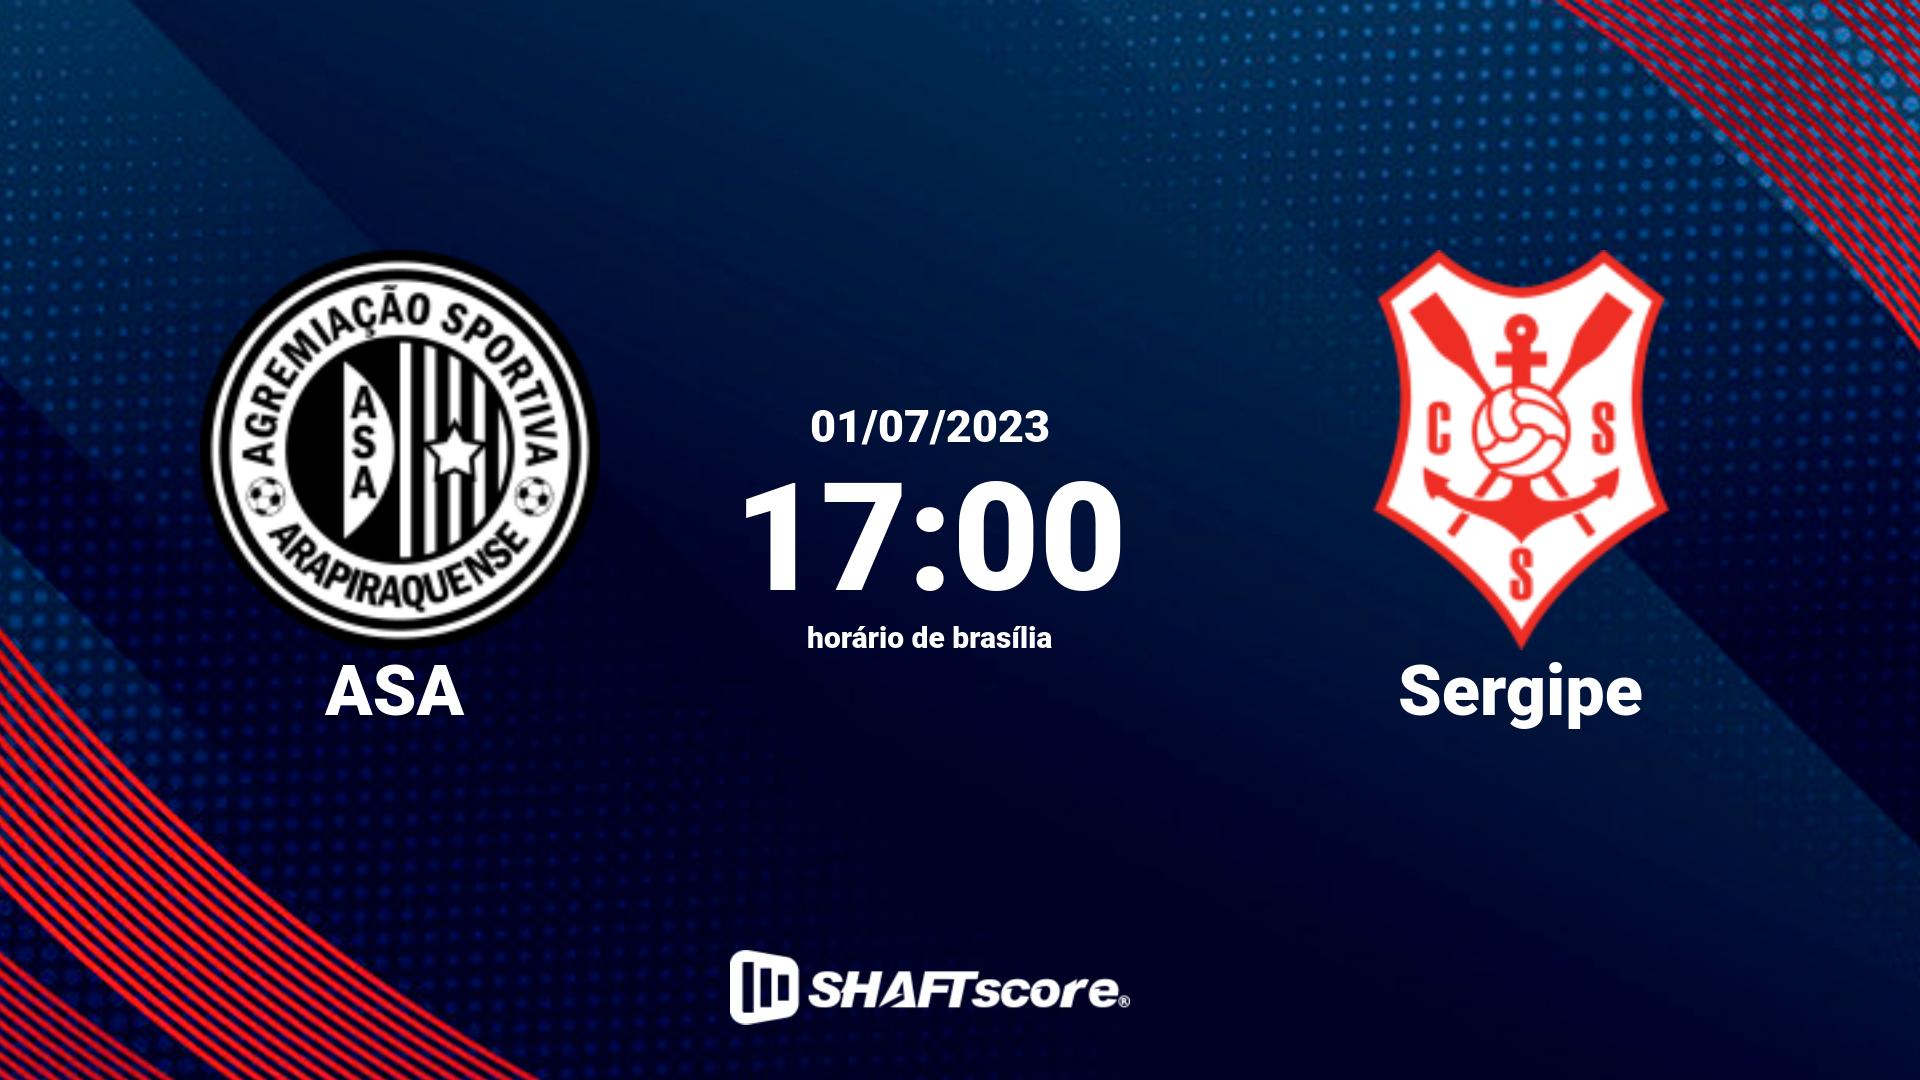 Estatísticas do jogo ASA vs Sergipe 01.07 17:00